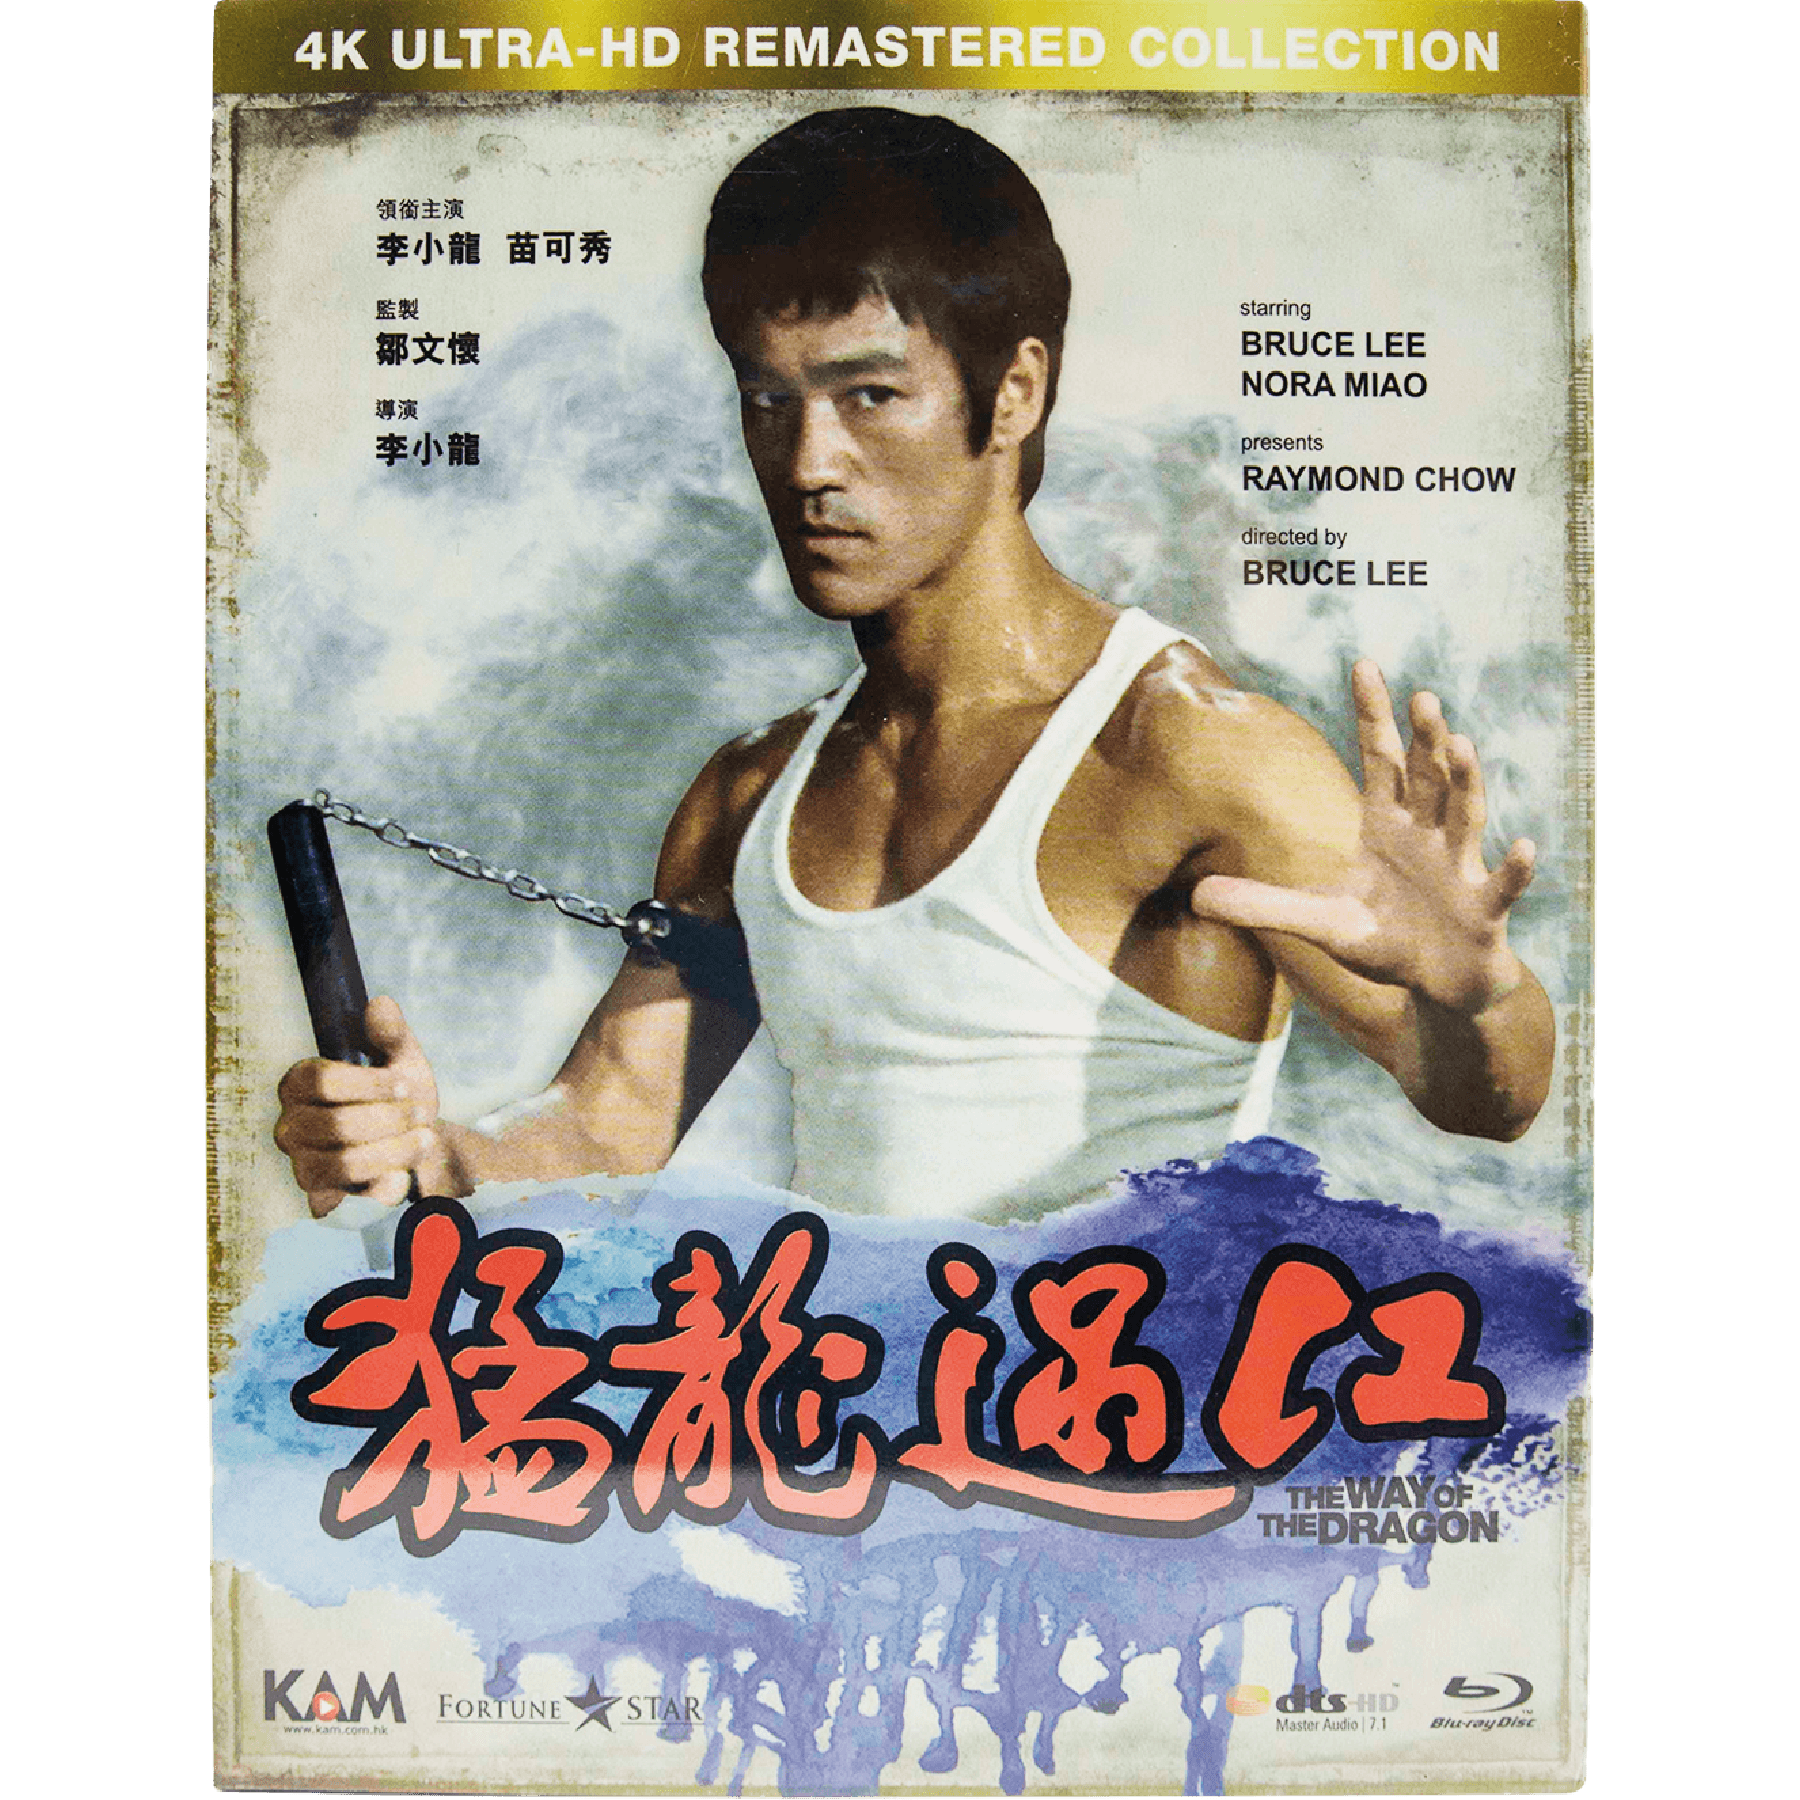 『猛龍過江〜ドラゴンへの道』 (1972) (Blu-ray) (4K Ultra-HD 